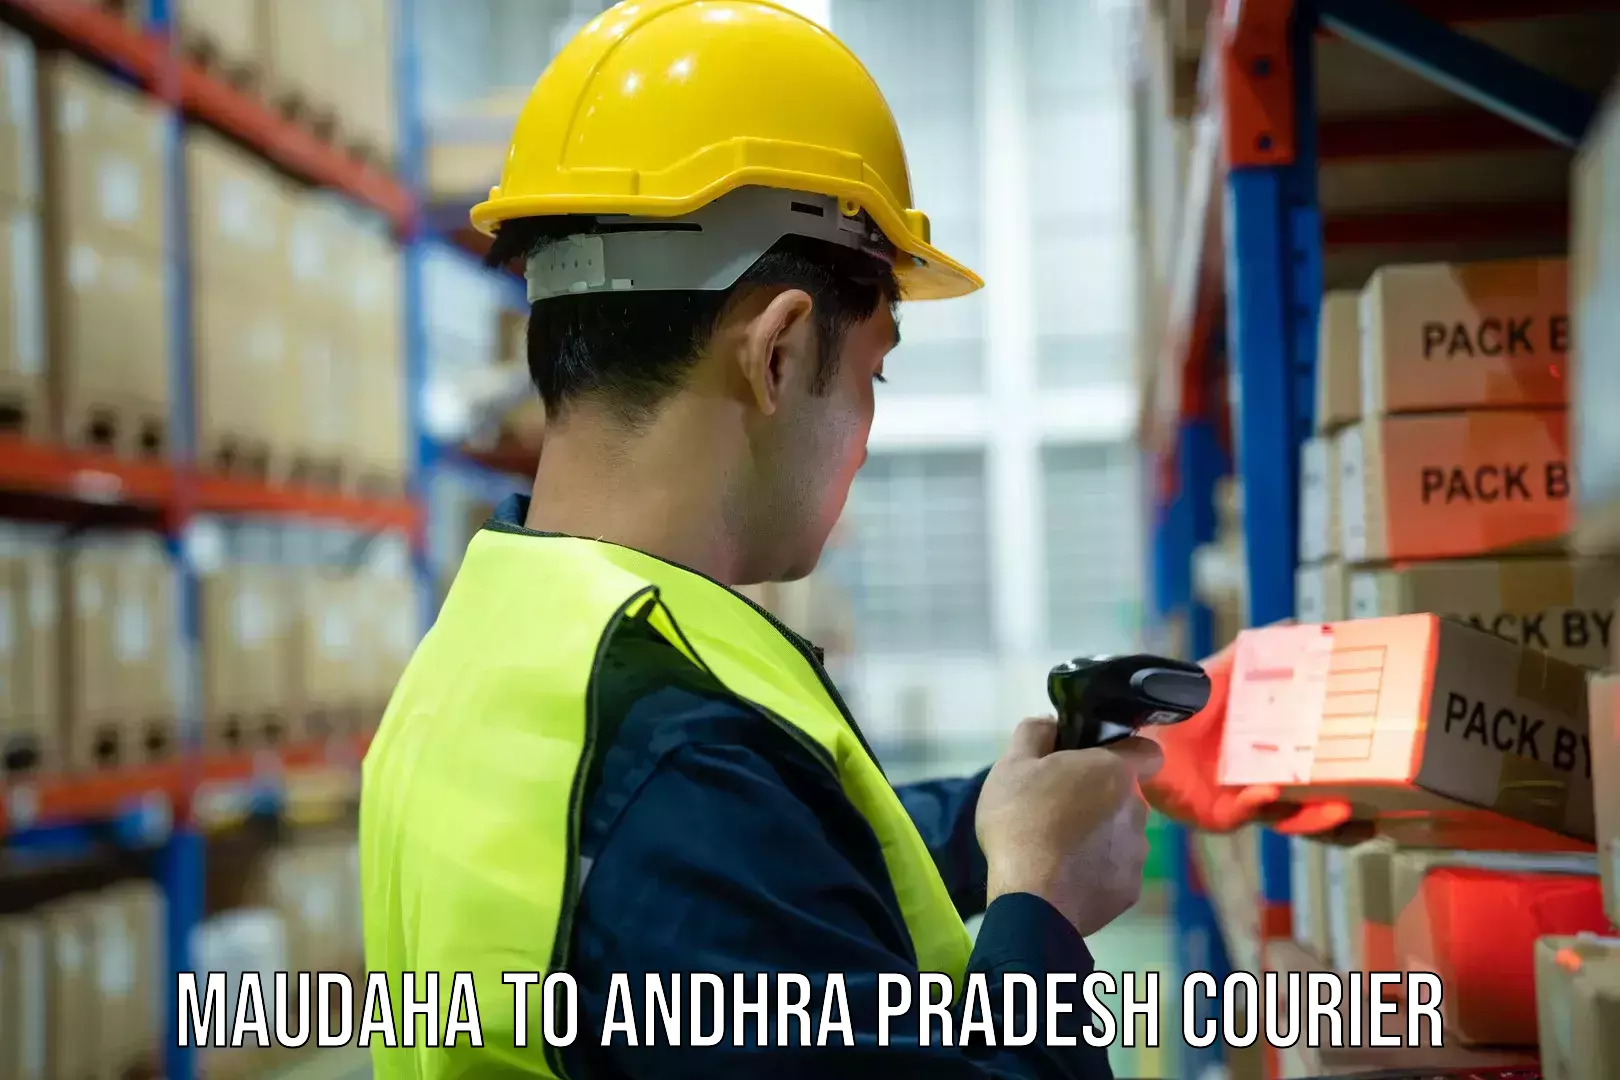 Professional courier handling Maudaha to Pedapadu